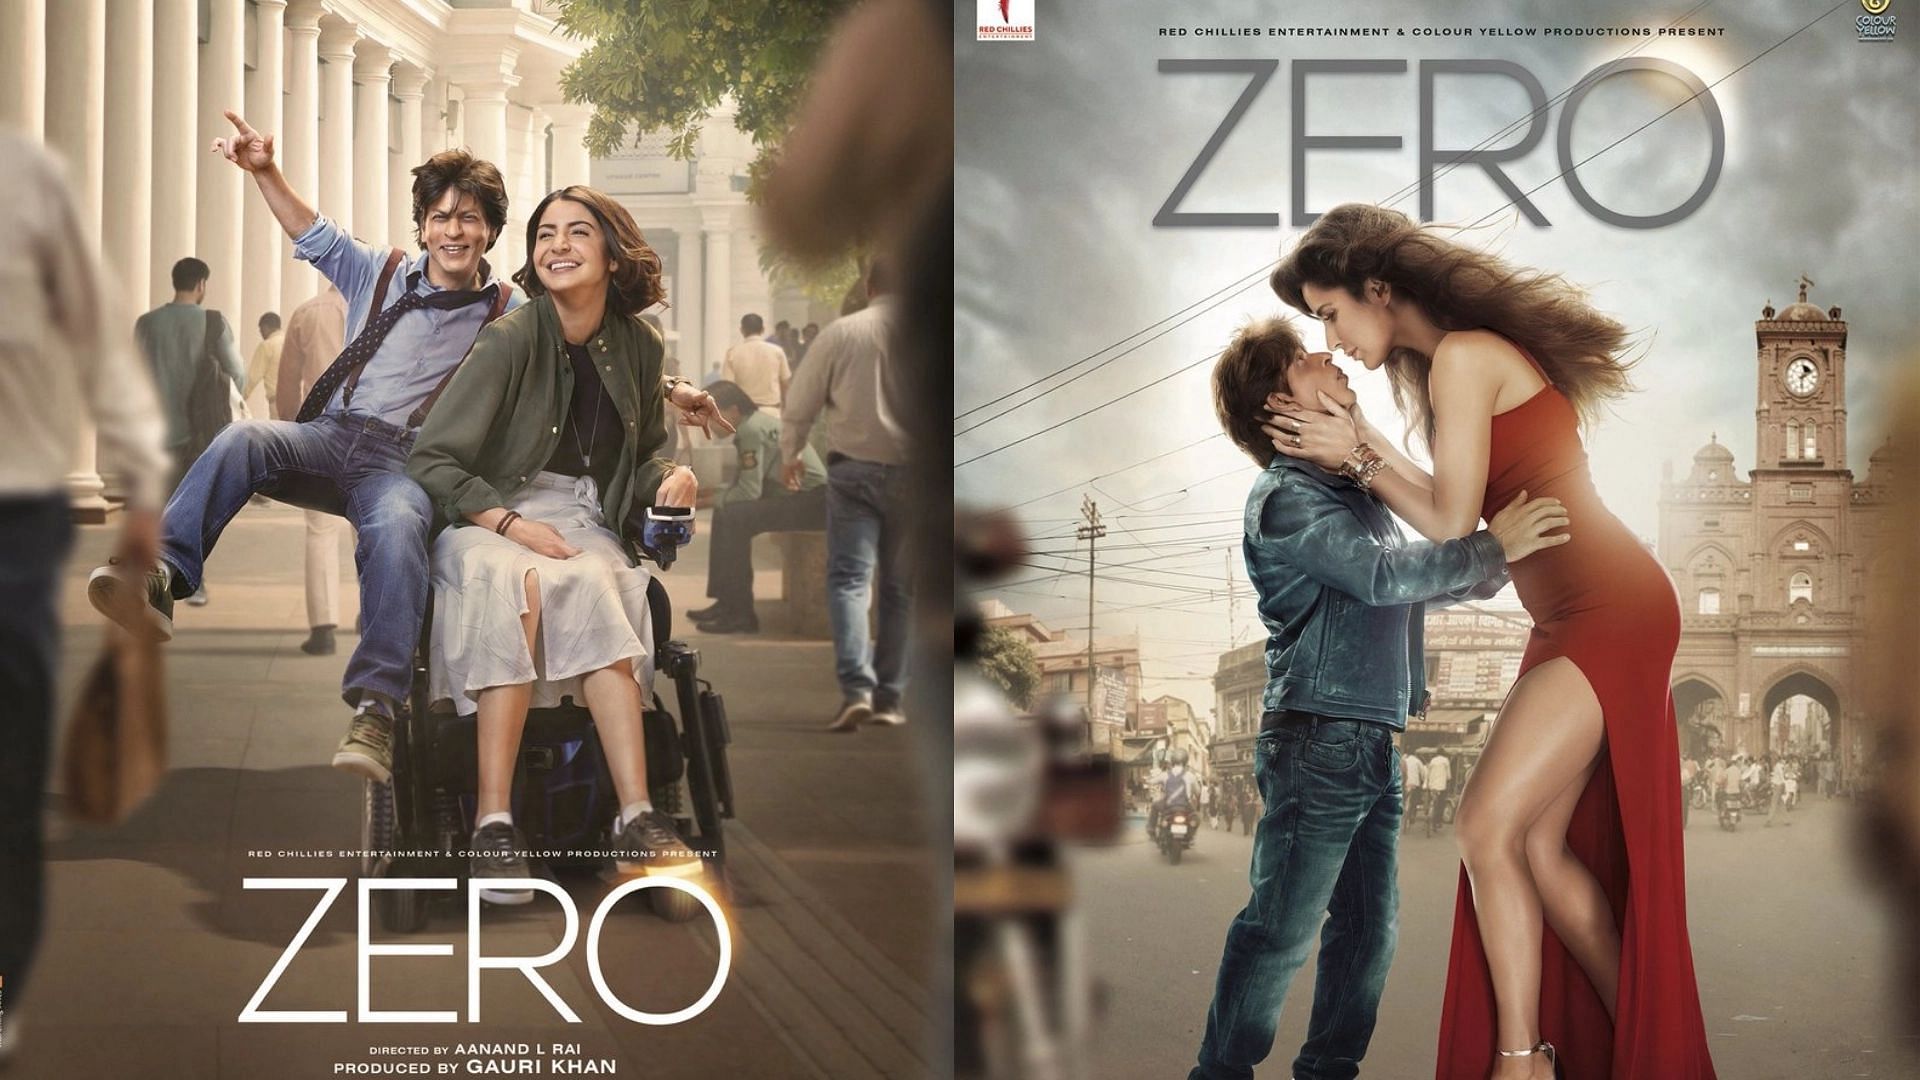 शाहरुख खान की फिल्म ‘जीरो’ की कमाई पहले दिन एवरेज से ऊपर रही